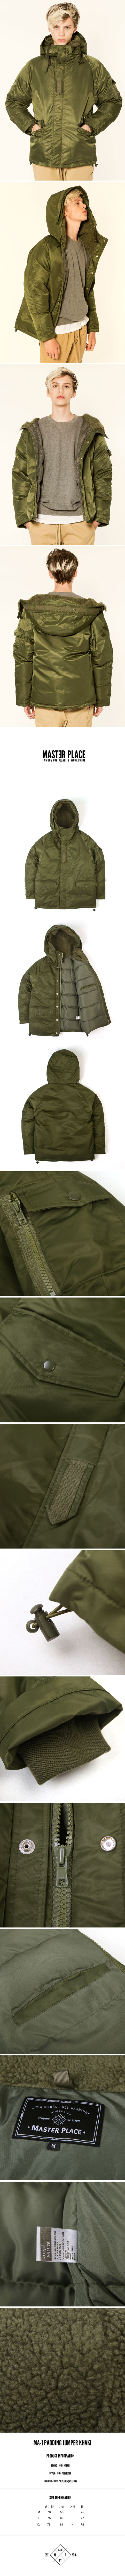 ma-1-padding-jacket-khaki-2.jpg